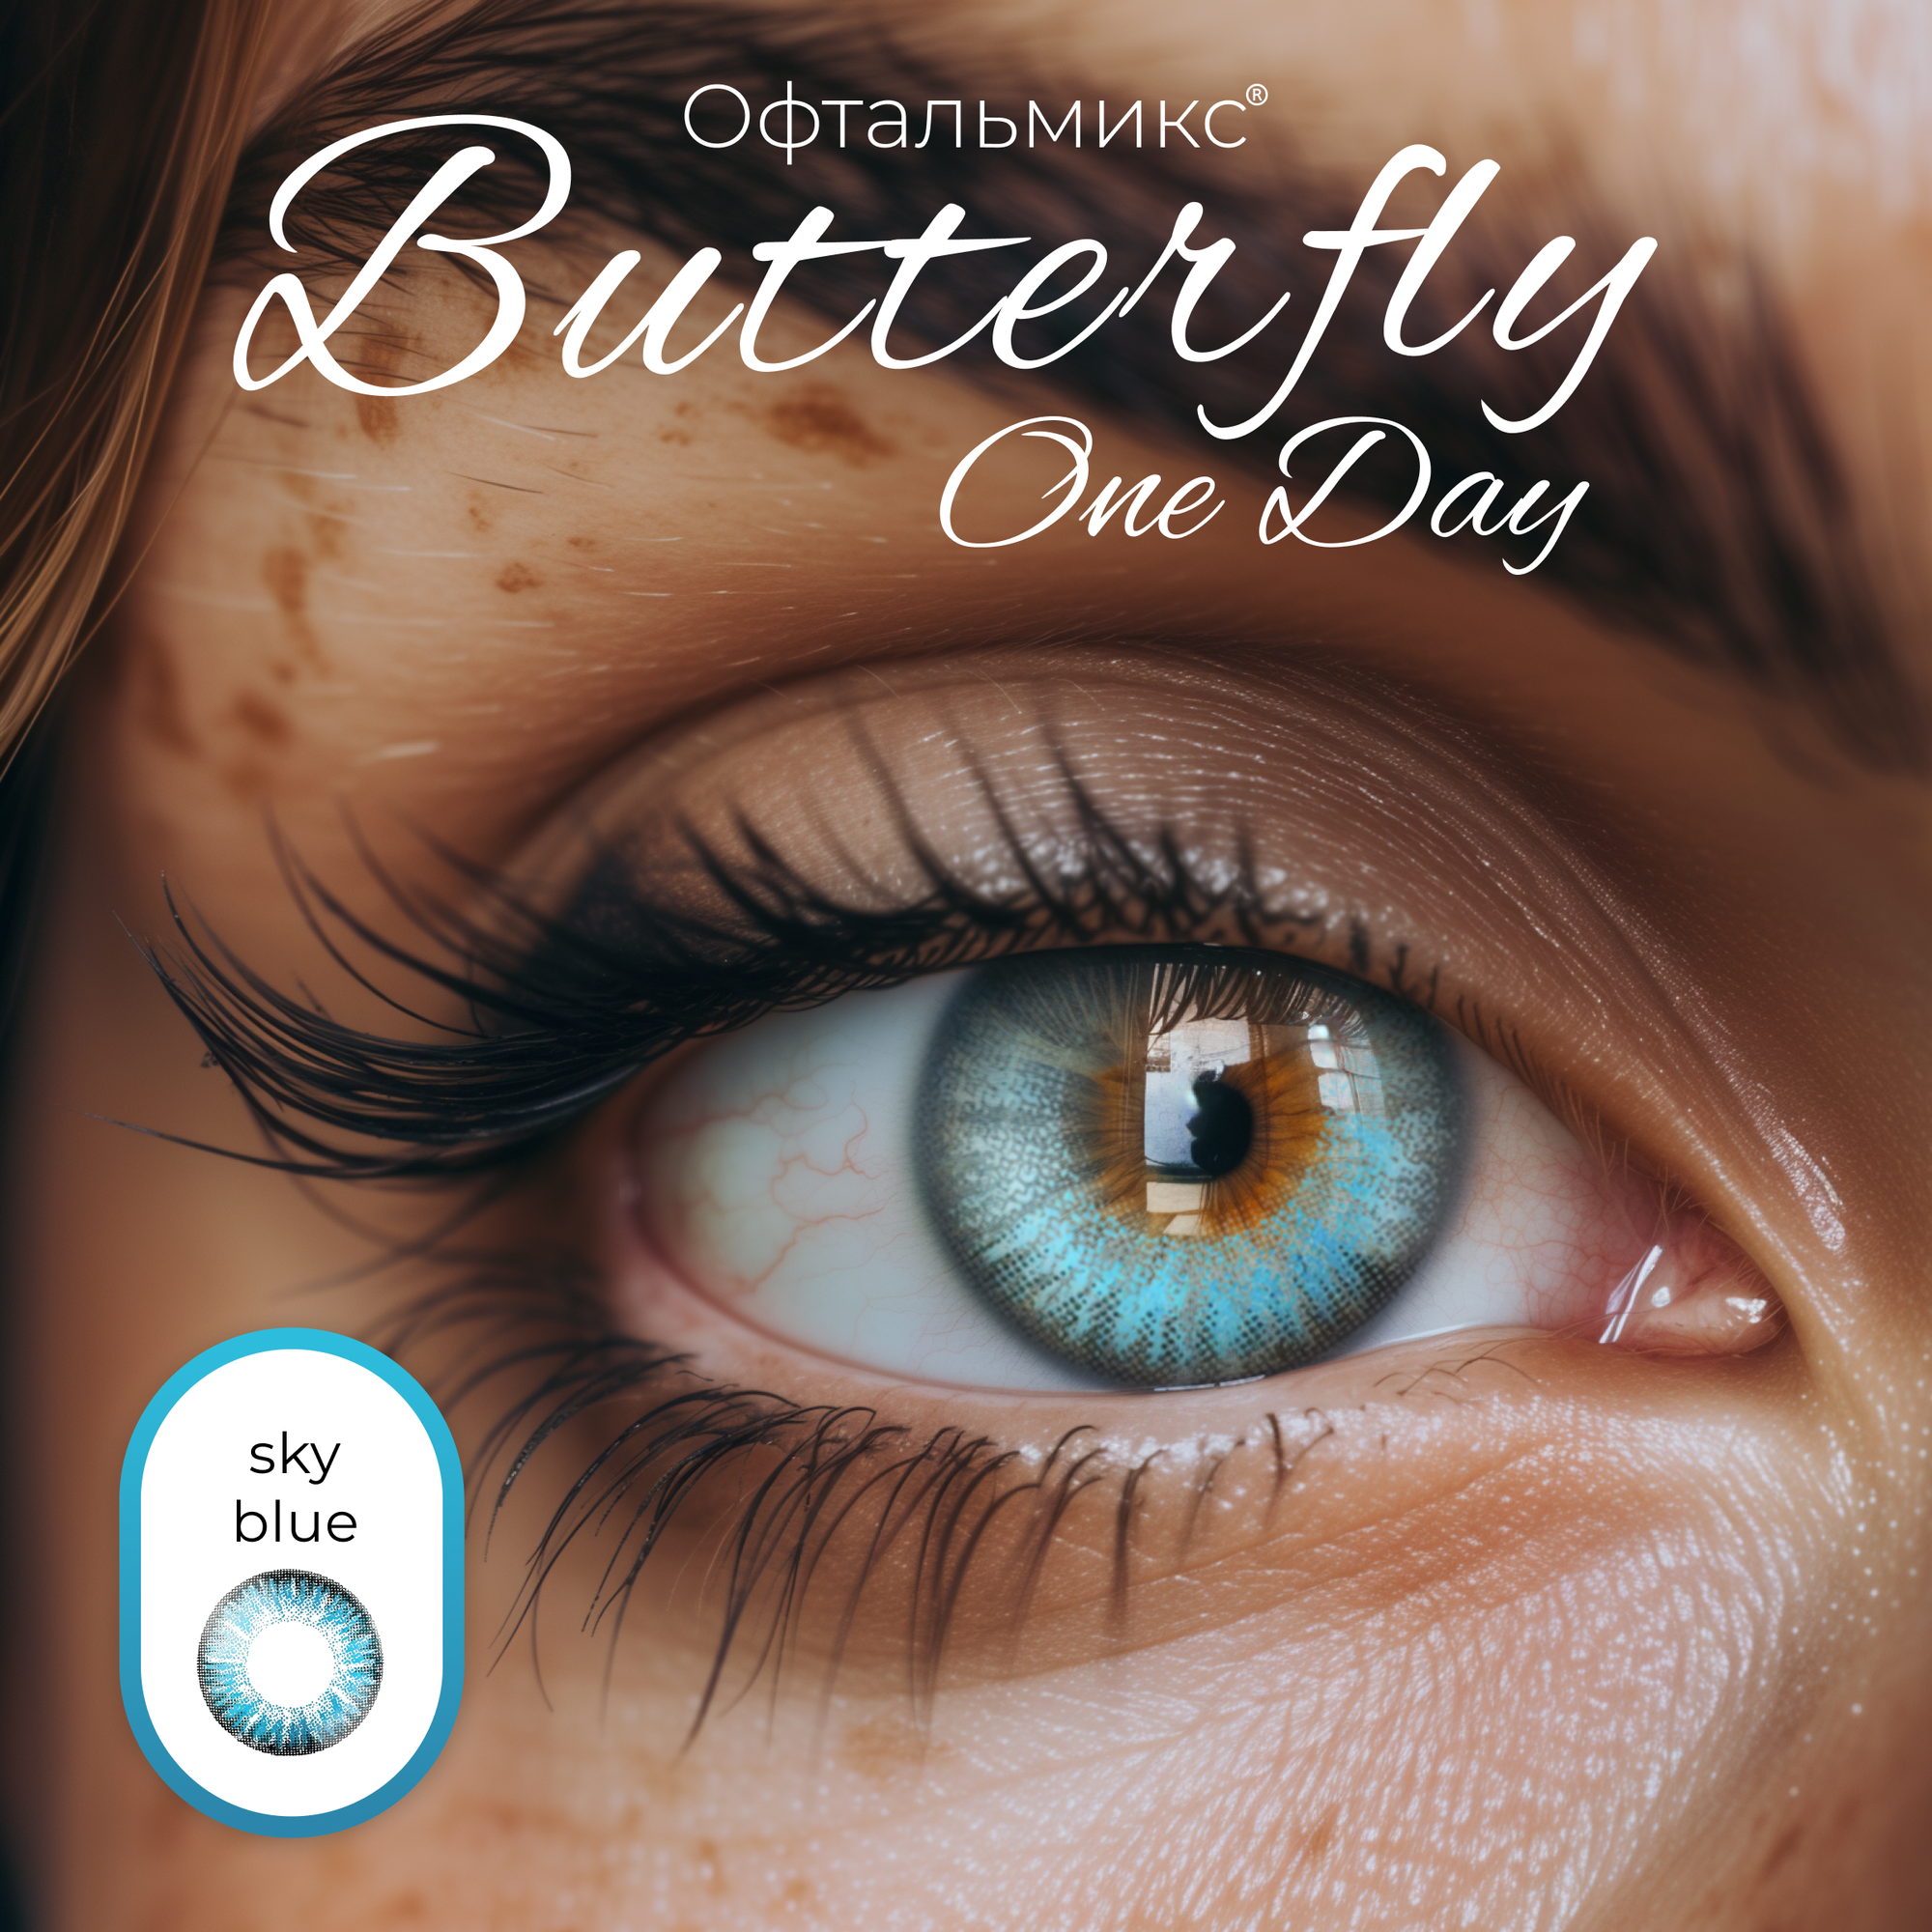 Цветные контактные линзы Офтальмикс Butterfly One Day (2 линзы) -4.00 R 8.6 Sky Blue (Голубой)